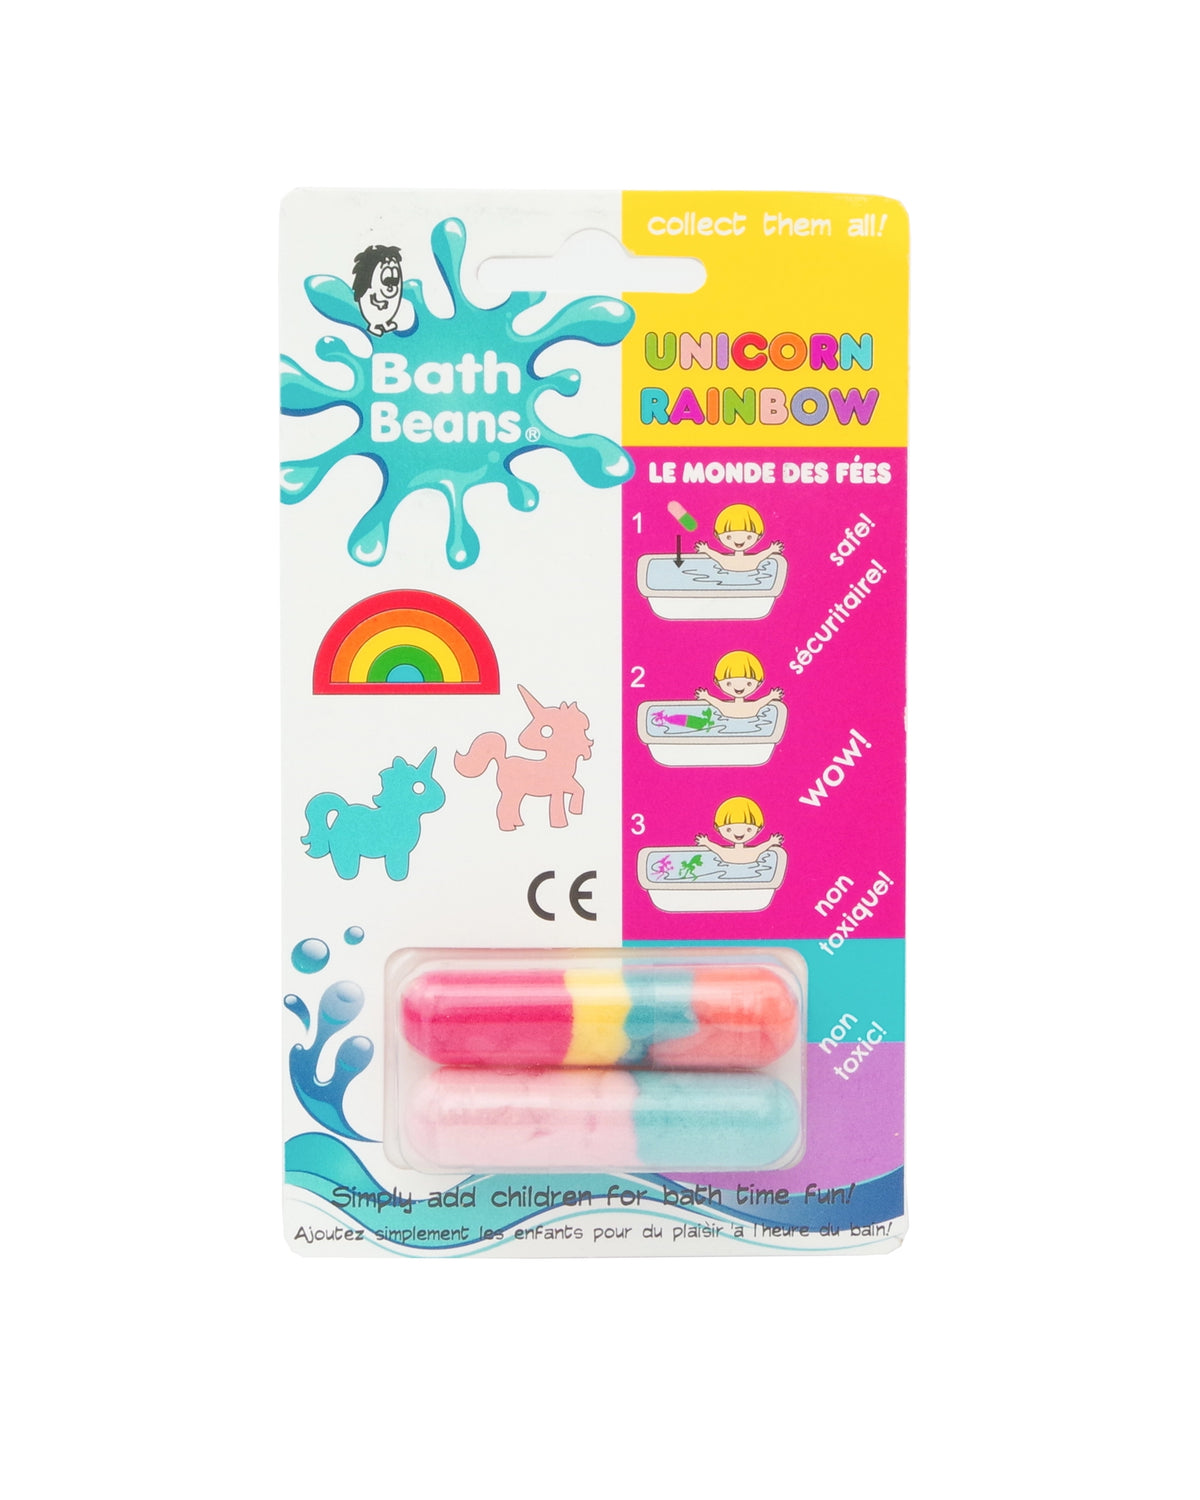 Bath Beans - Unicorn Rainbow